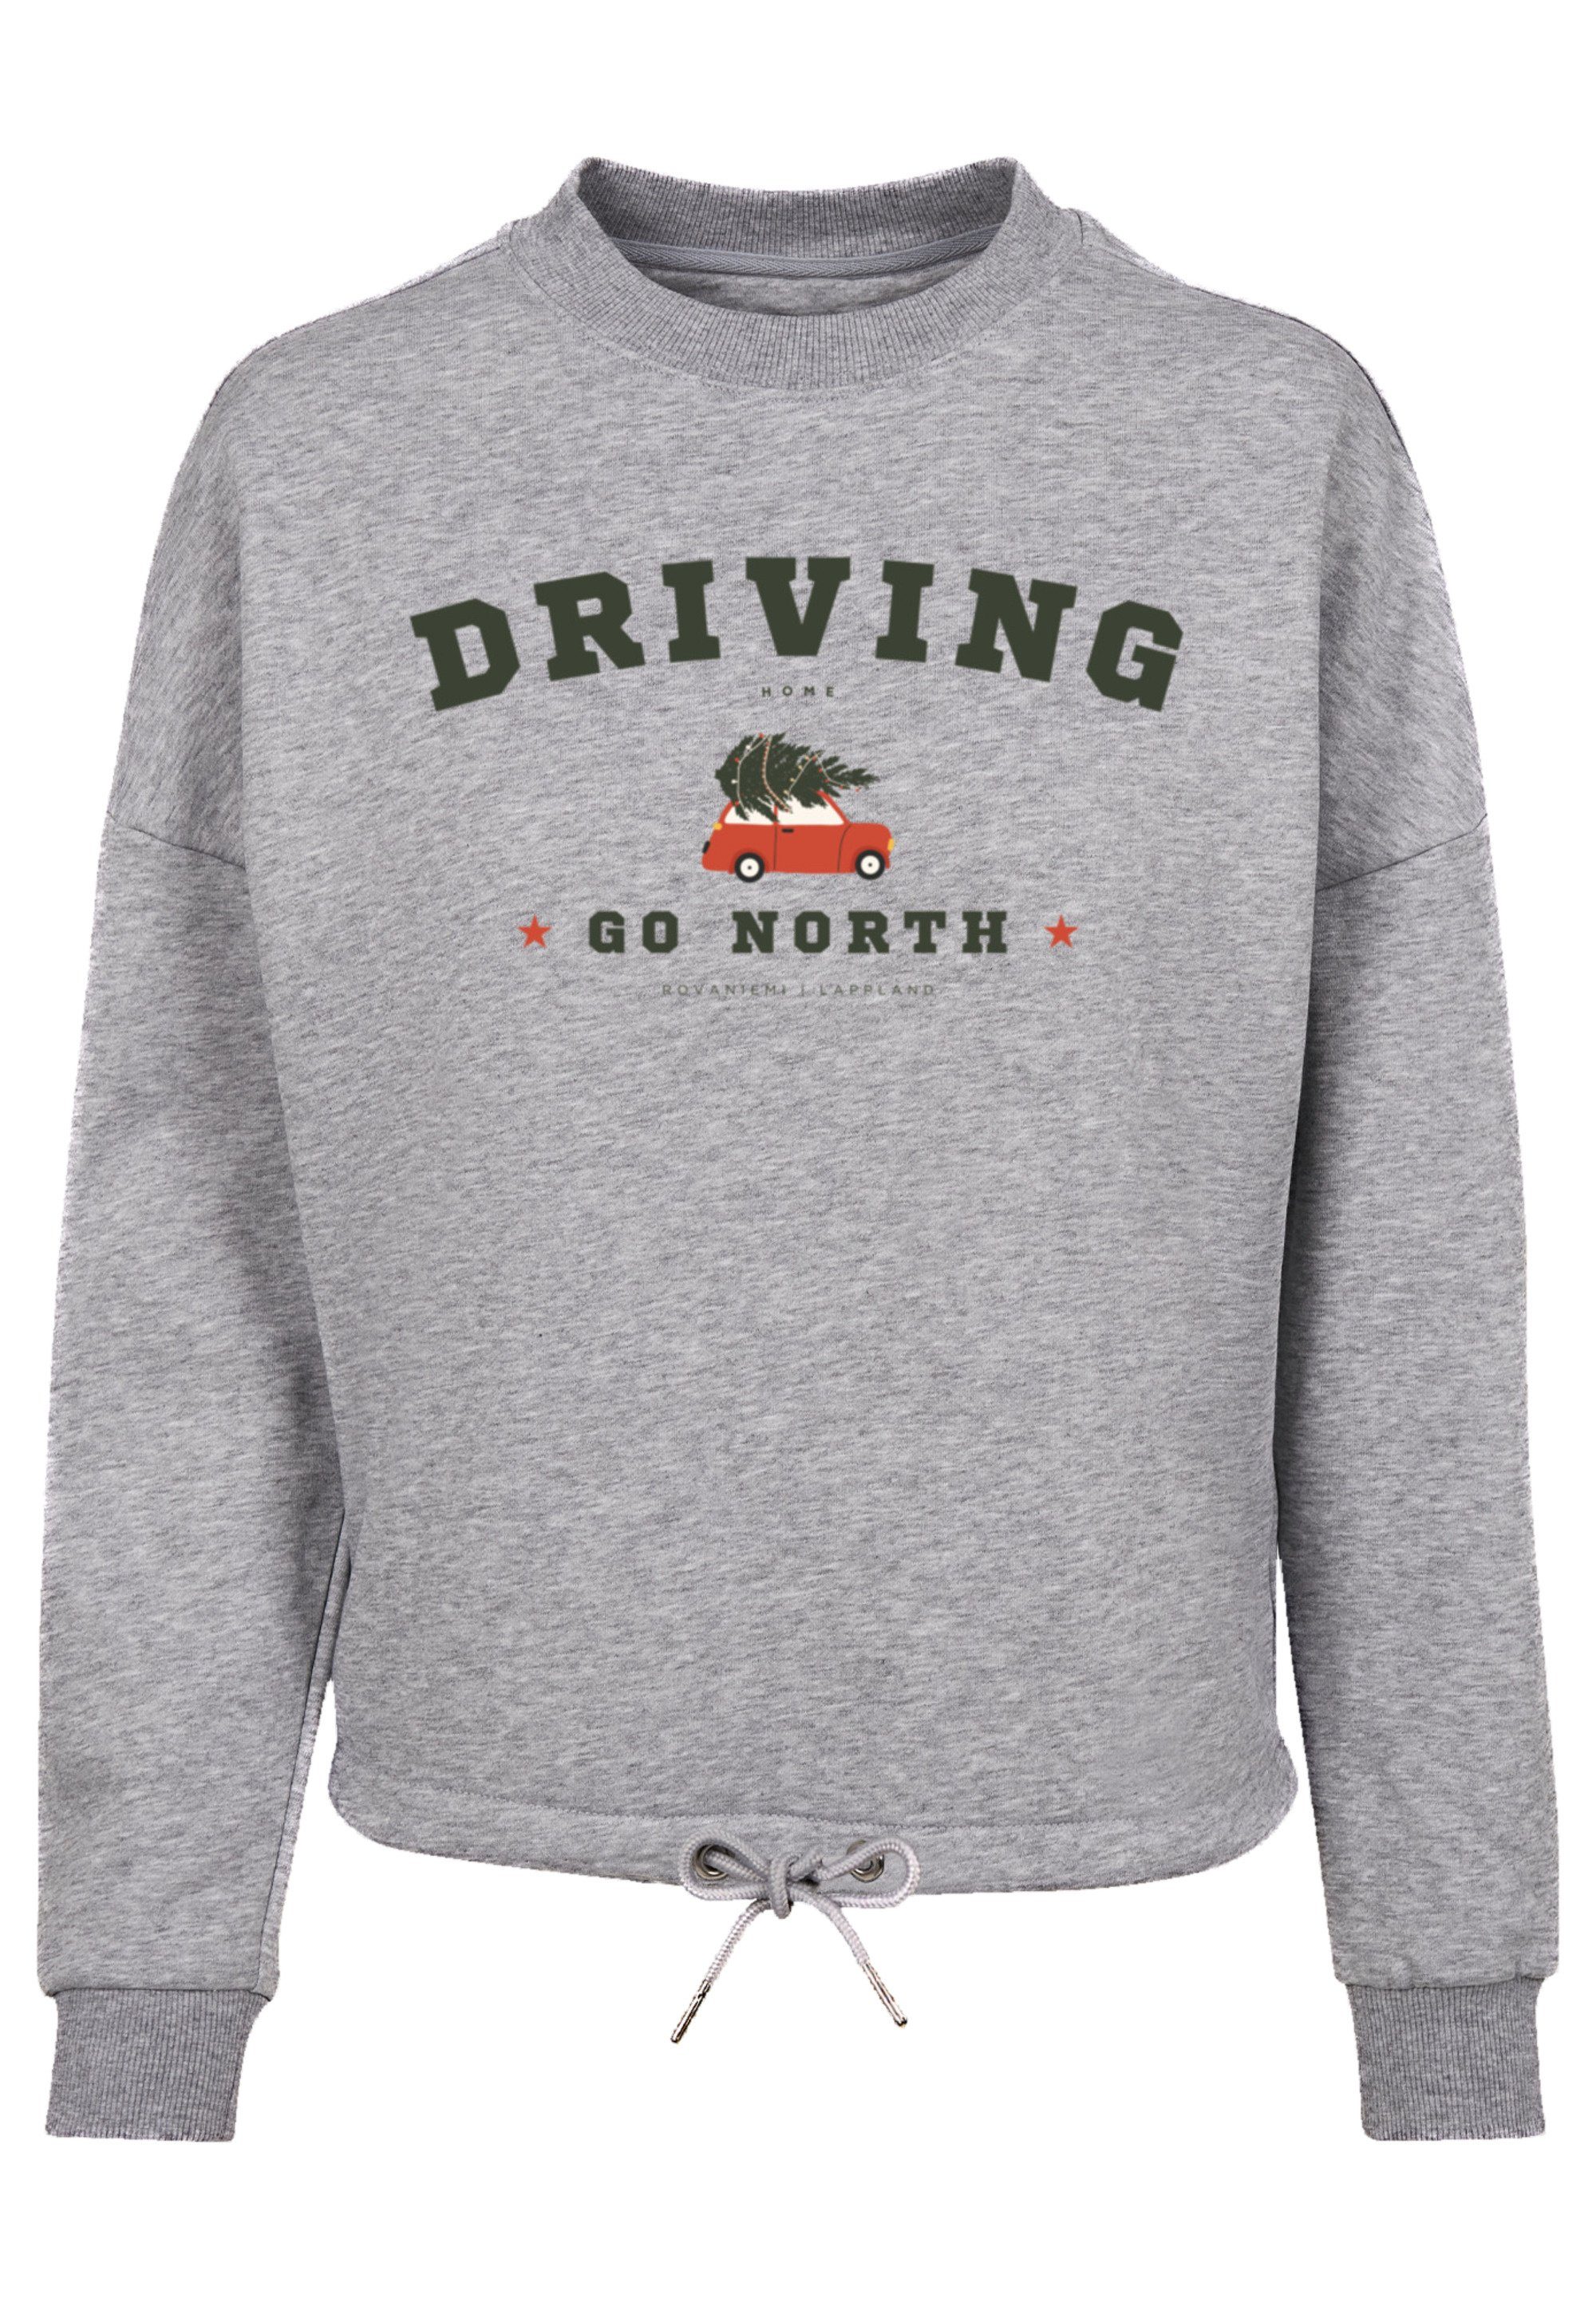 Geschenk, Weihnachten, Weihnachten heather Driving Home grey F4NT4STIC Sweatshirt Logo